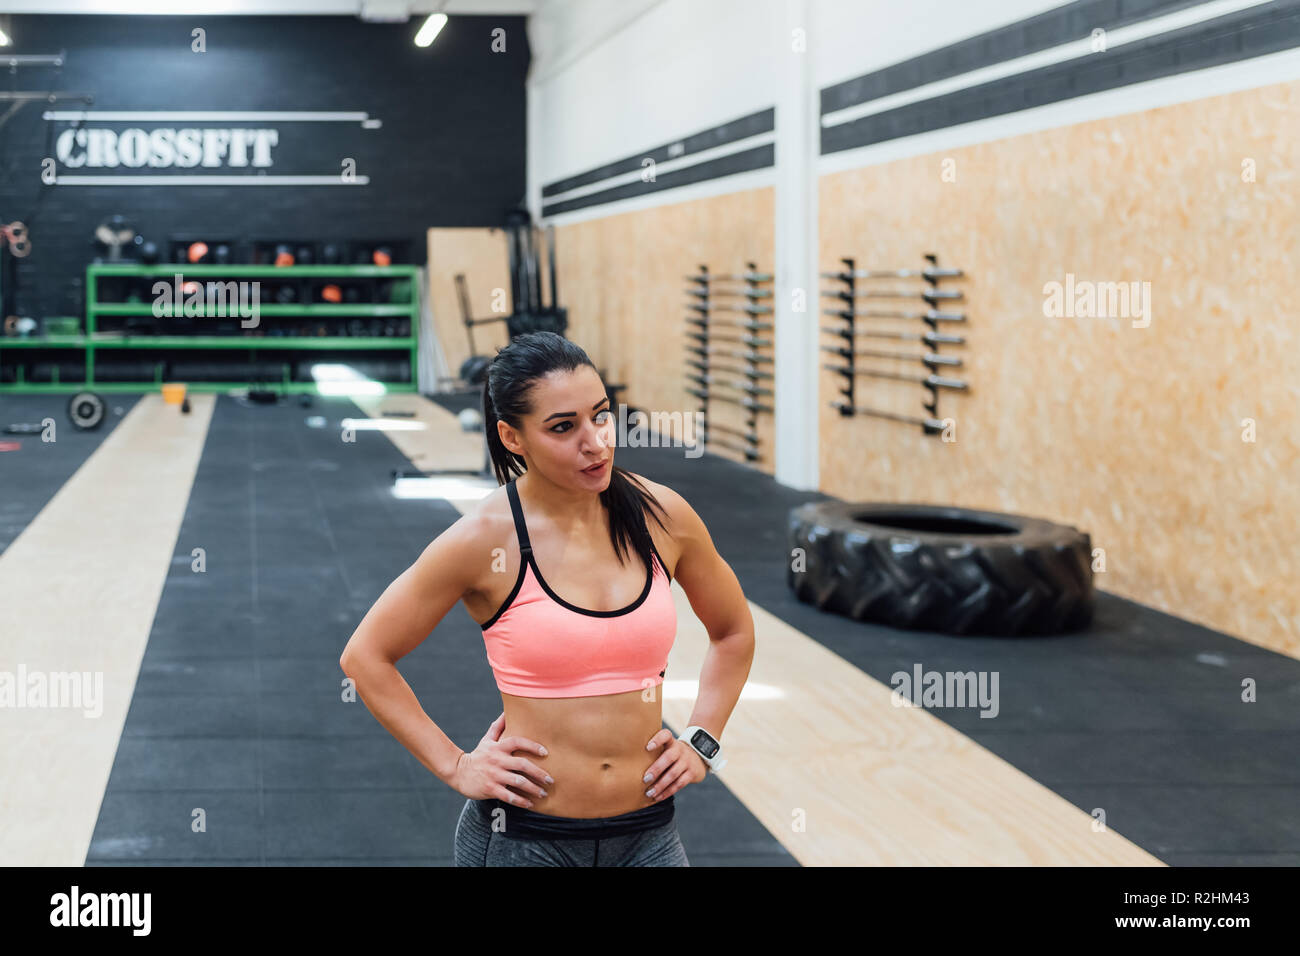 Junge Frau training Indoor crossfit Fitnessraum sportlich, Ausbildung, gesunden Lebensstil Konzept Stockfoto